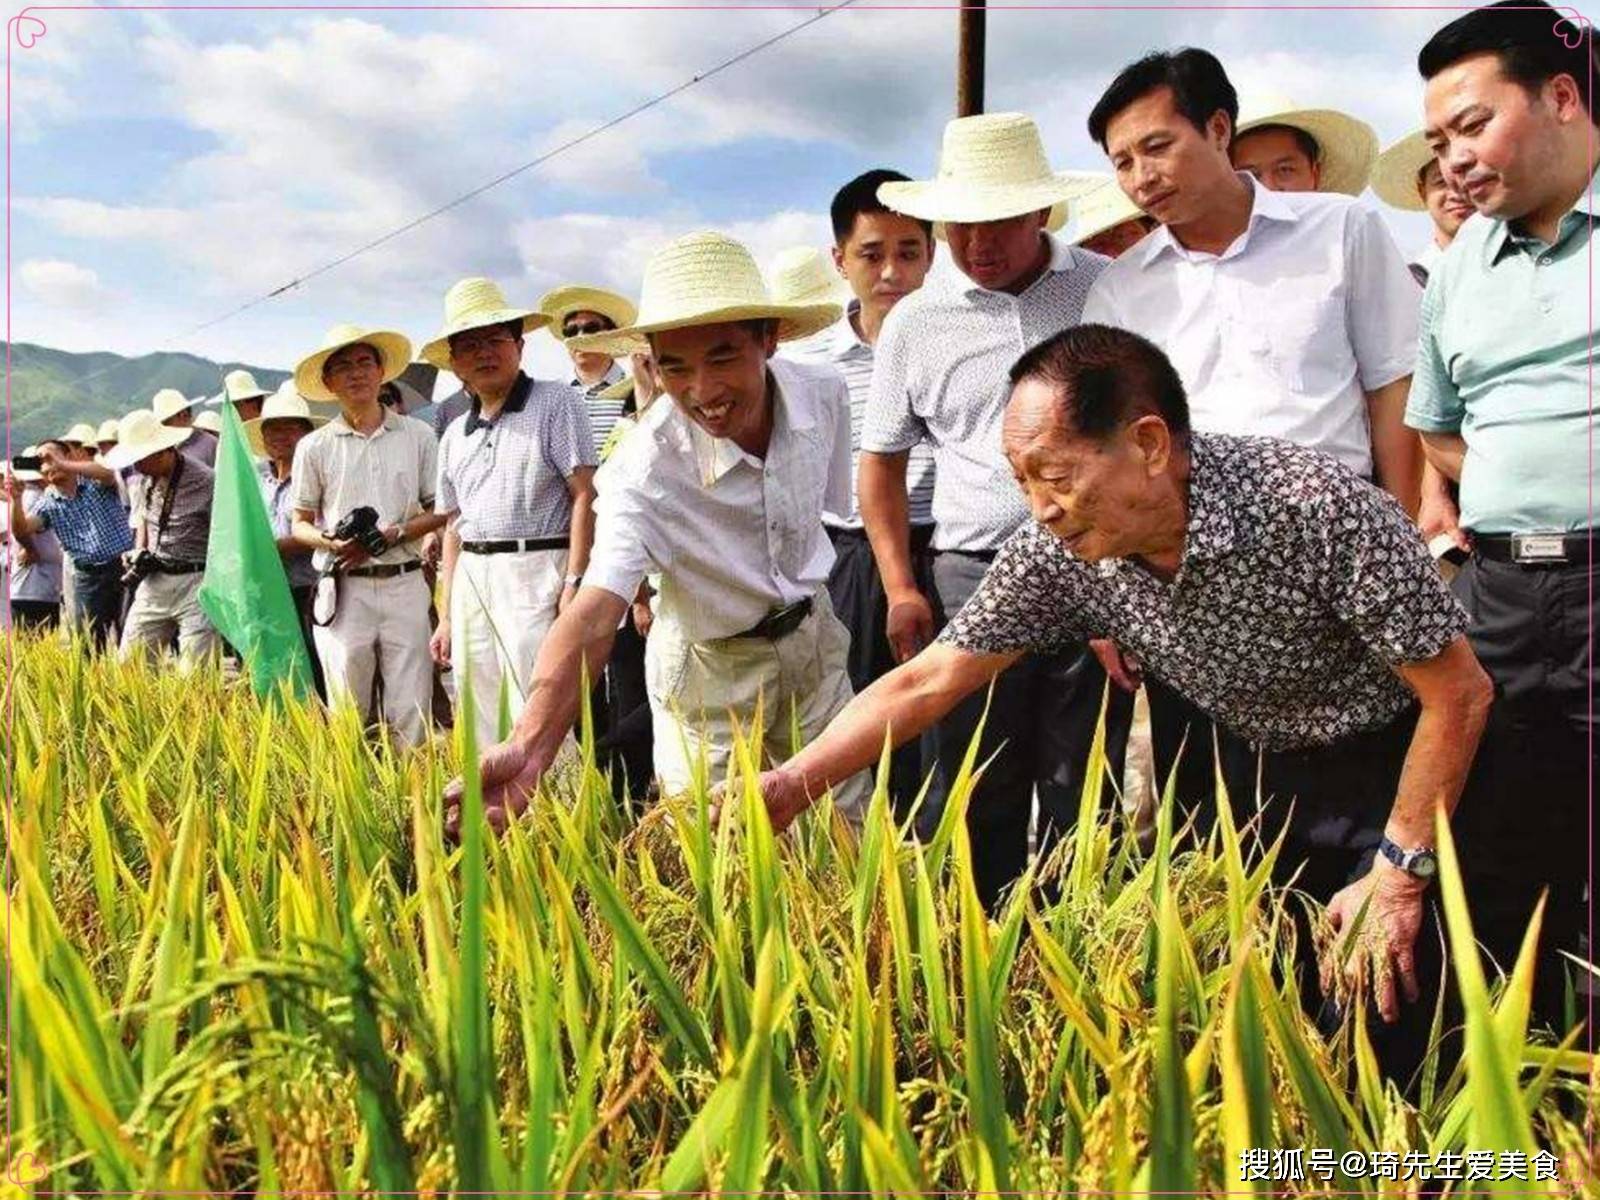 袁隆平:海水稻年增产300亿公斤!有人说不好吃?